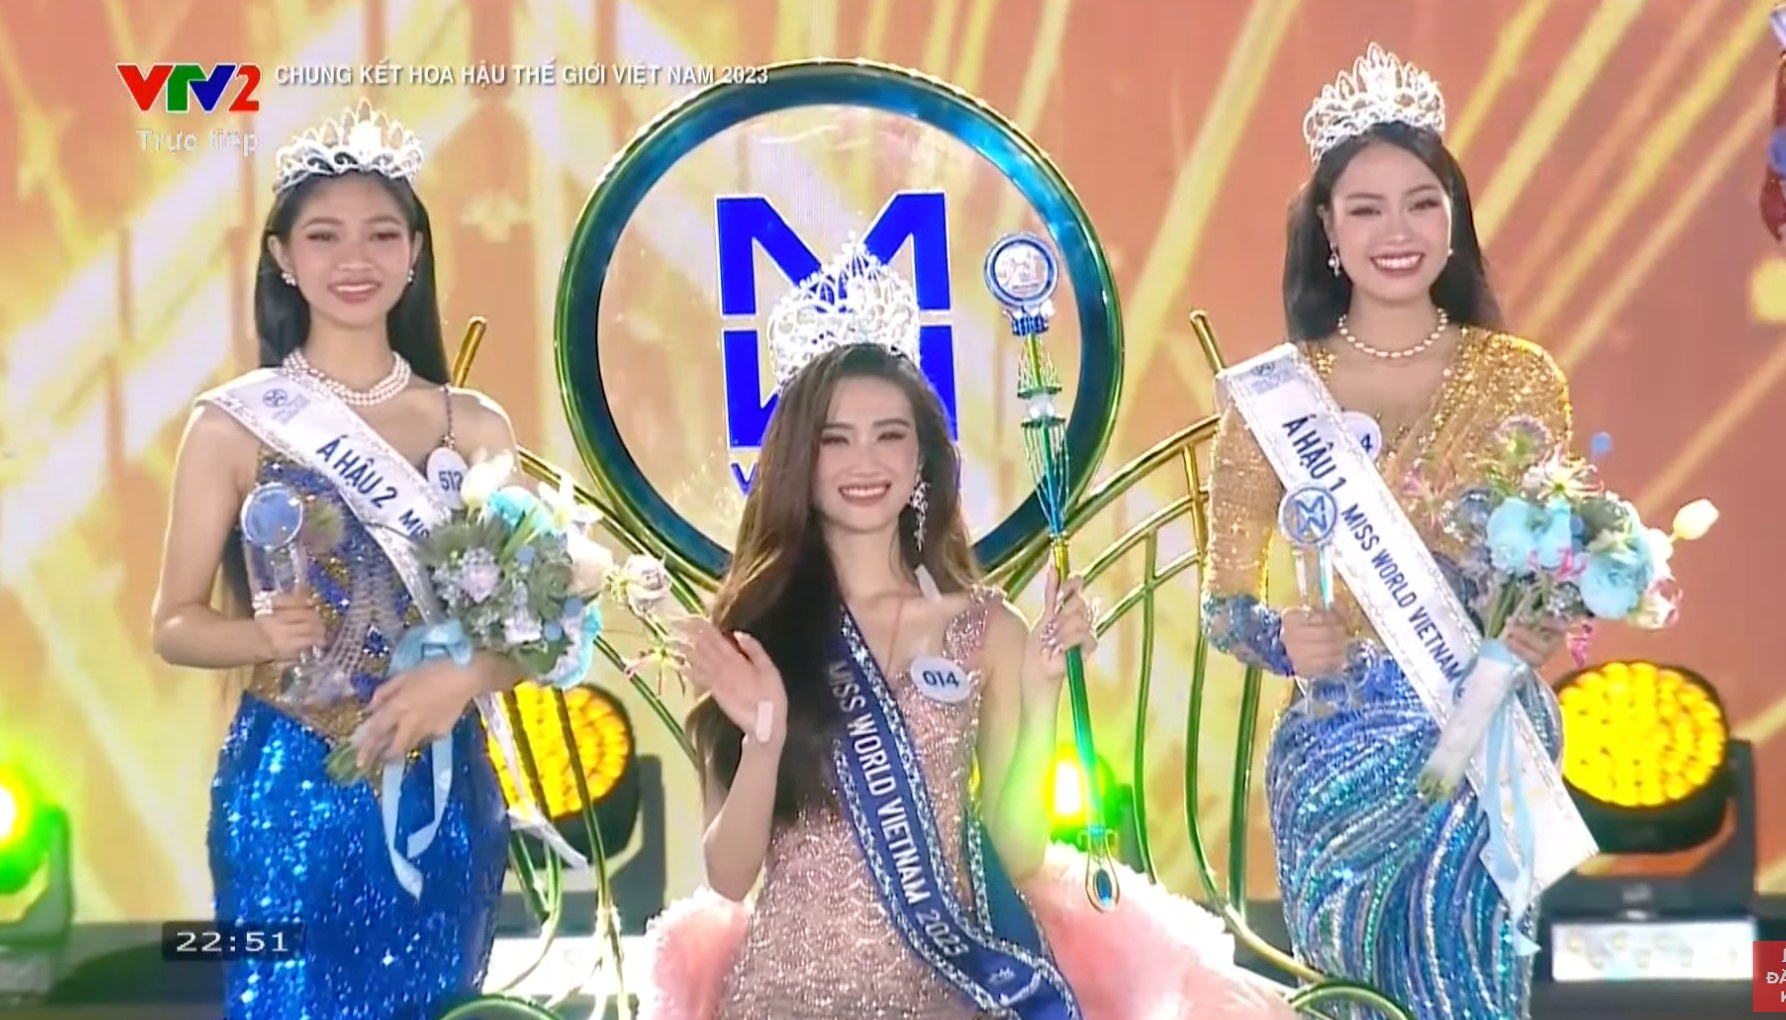 Tuổi thơ bất hạnh, nhiều biến cố của người đẹp Huỳnh Minh Kiên - Á hậu 2 Miss World Vietnam 2023 - ảnh 1